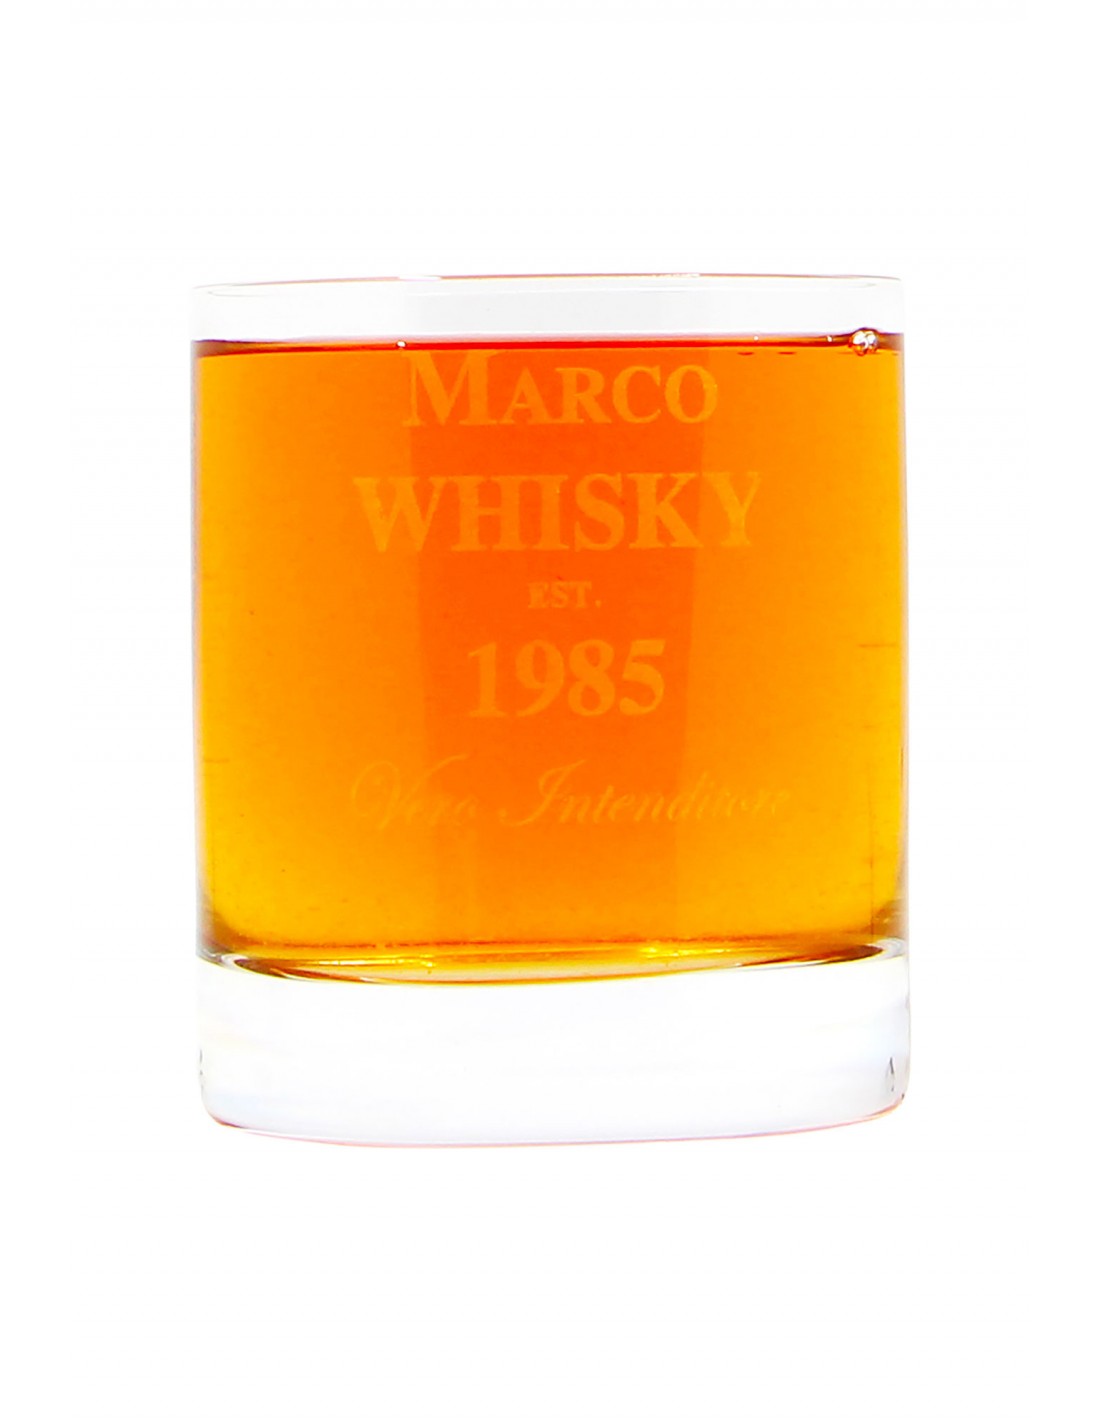 1 Modello elegante Bicchiere da whisky personalizzato con incisione 